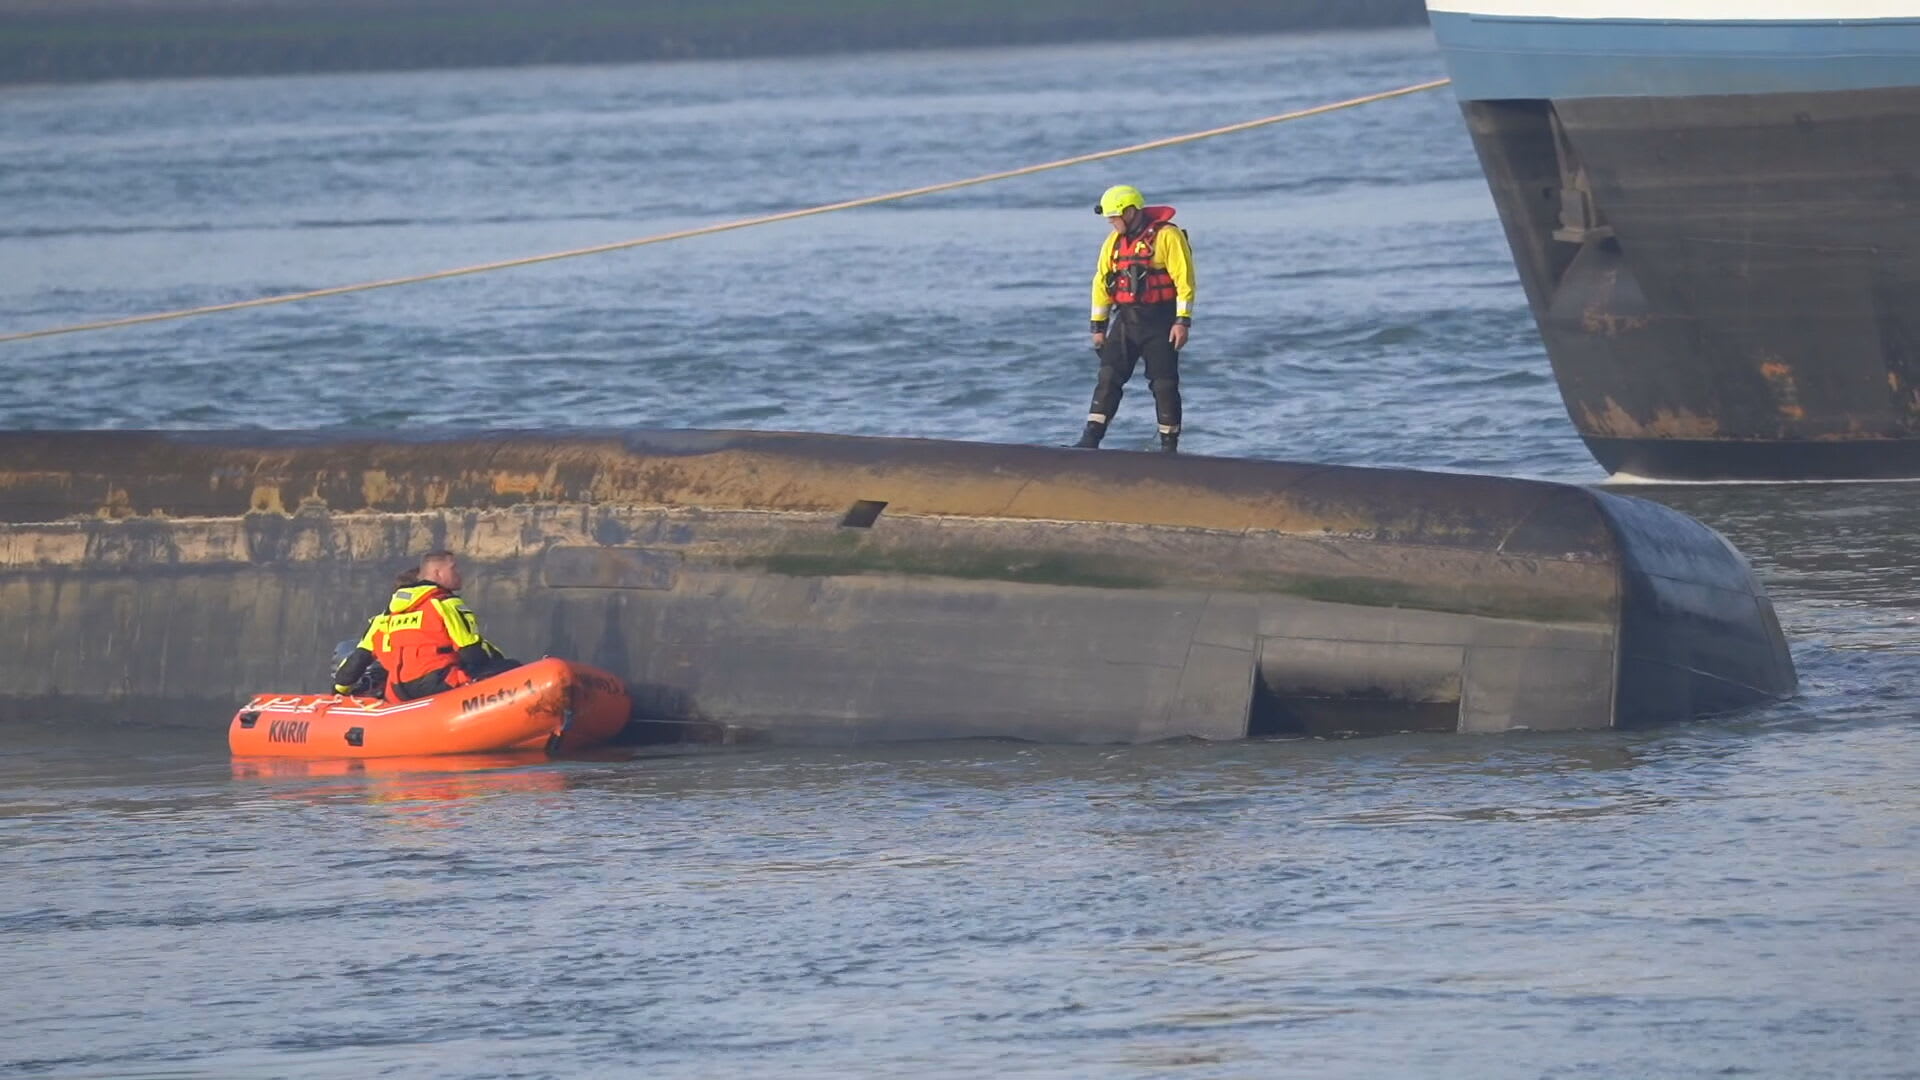 Schip omgeslagen in Rotterdam, reddingsactie gestart voor vermiste opvarende 